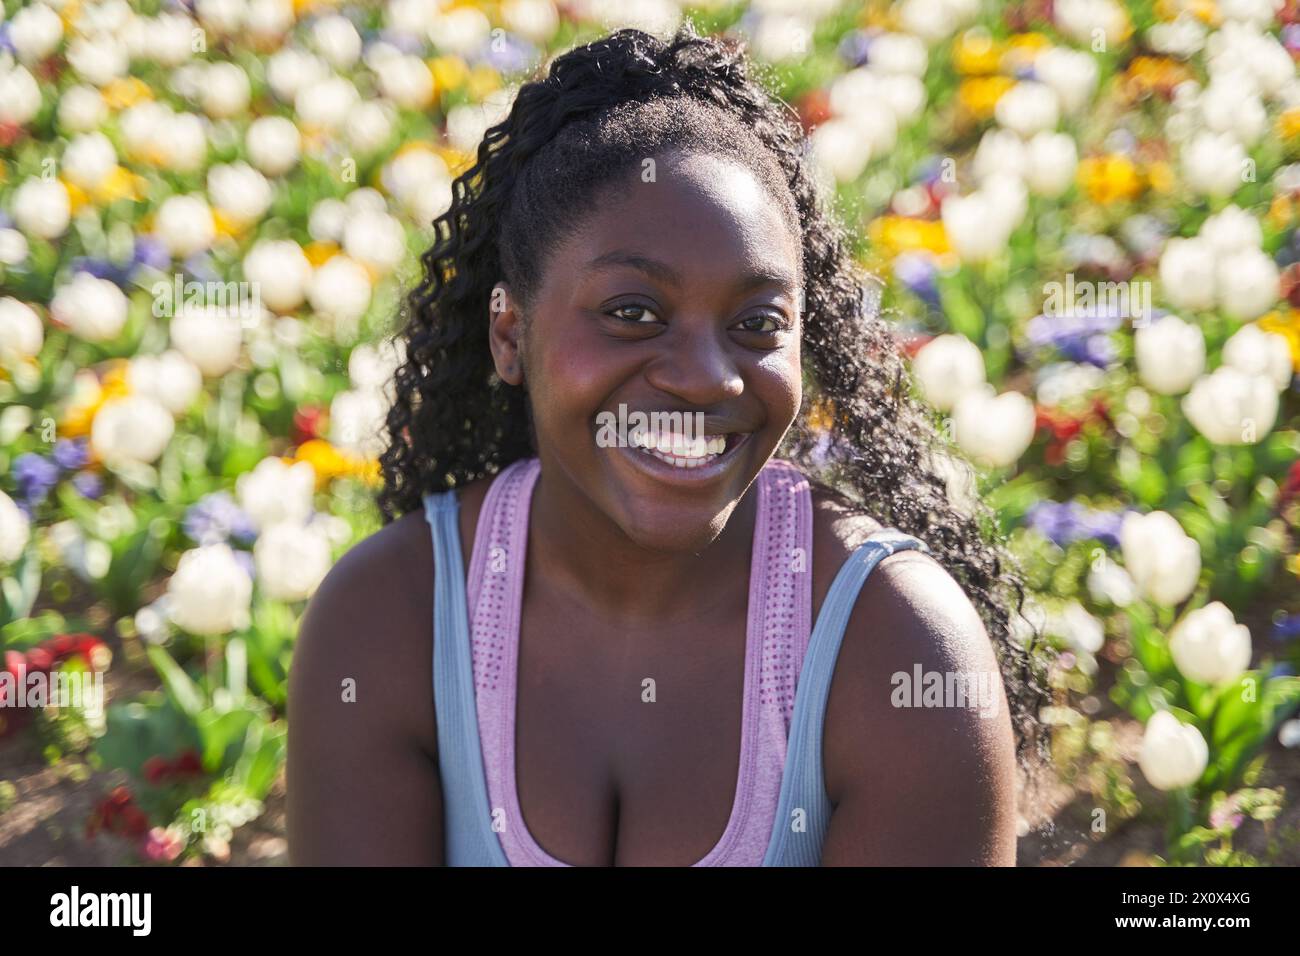 Porträt einer afroamerikanischen Frau in einer Umgebung voller bunter Blumen Stockfoto